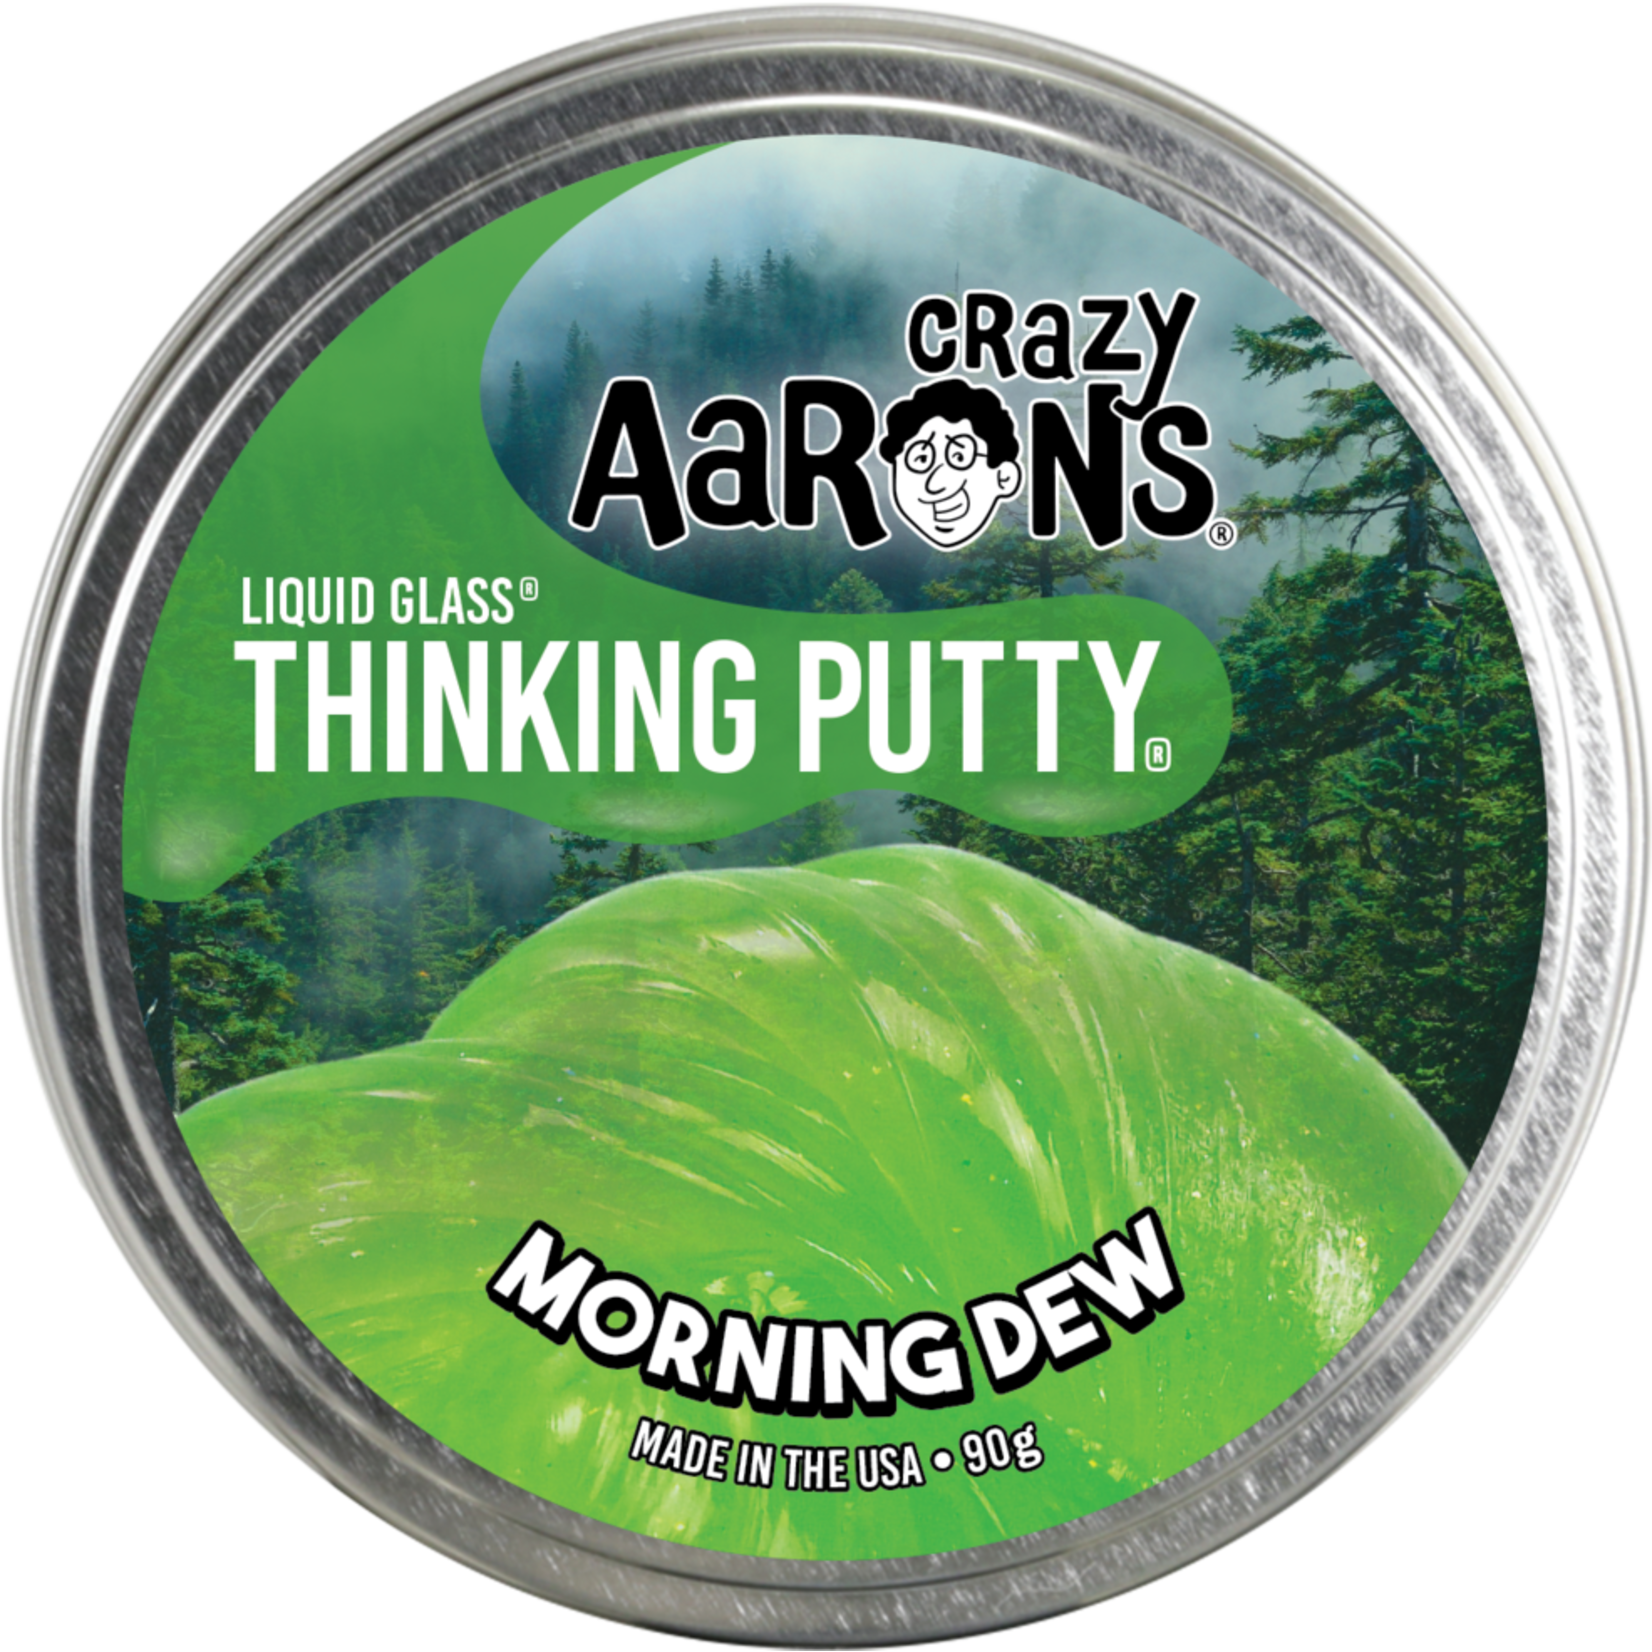 CRAZY AARON'S MORNING DEW